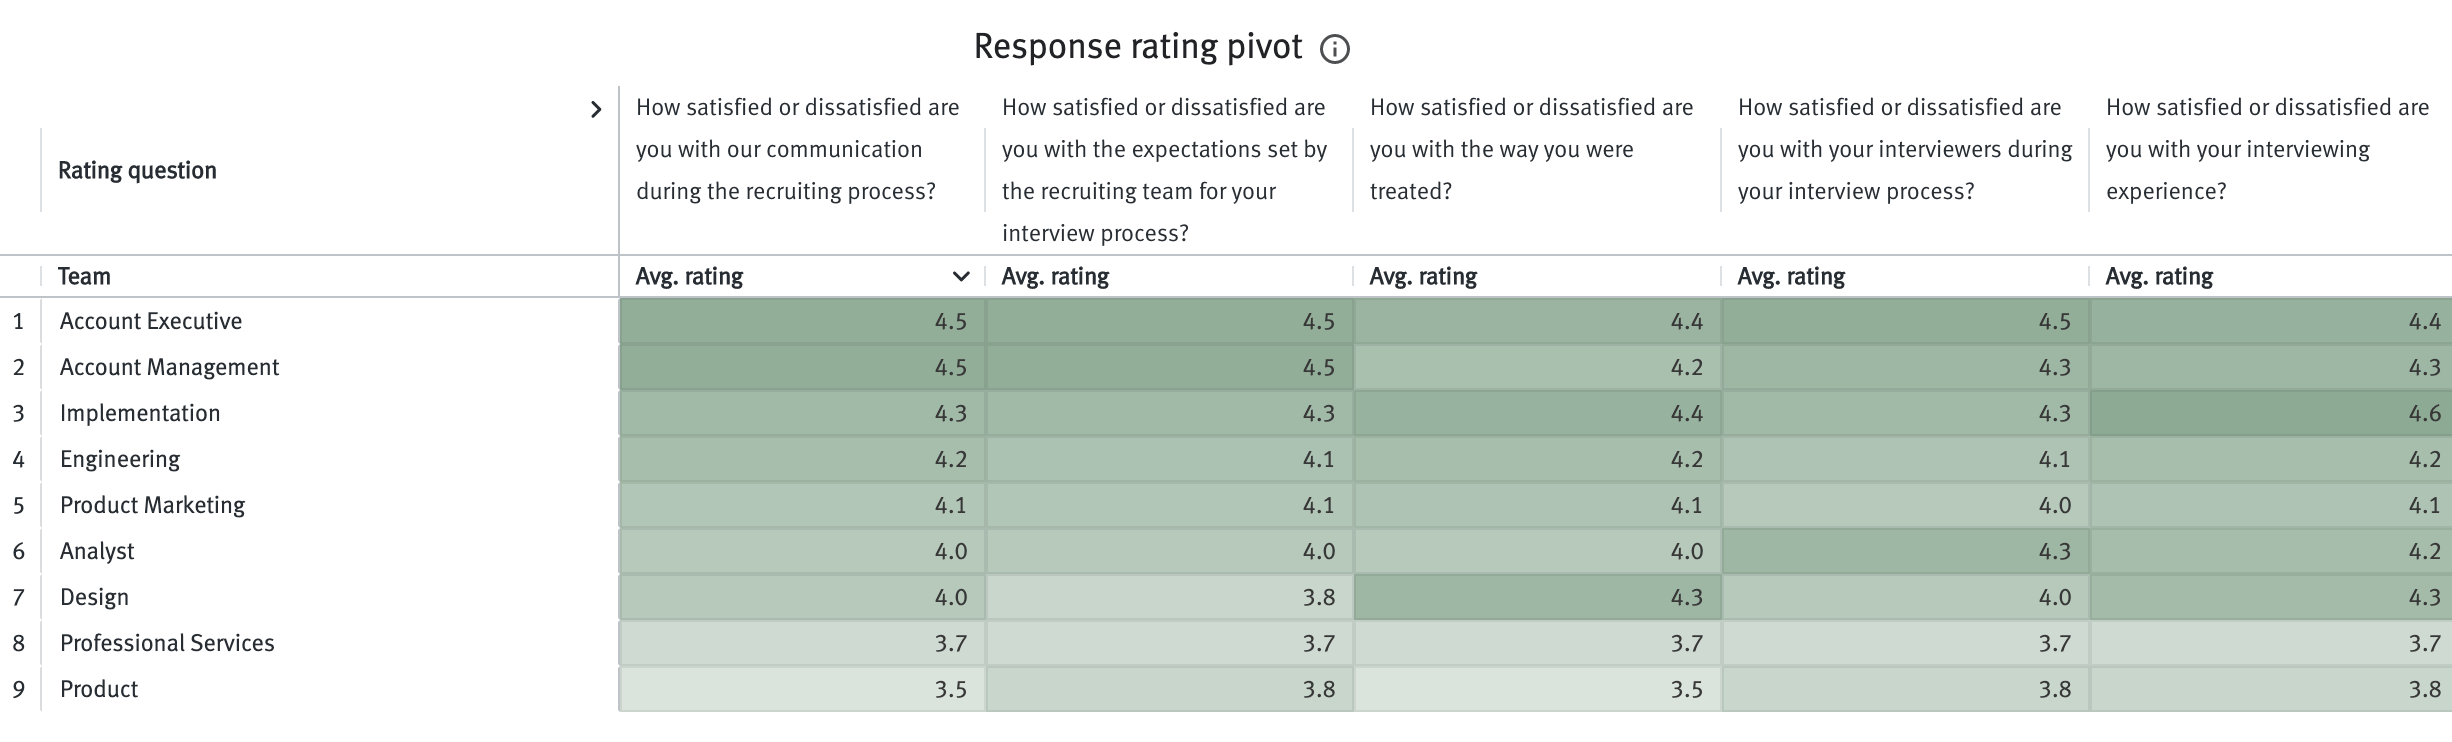 Response rating pivot table